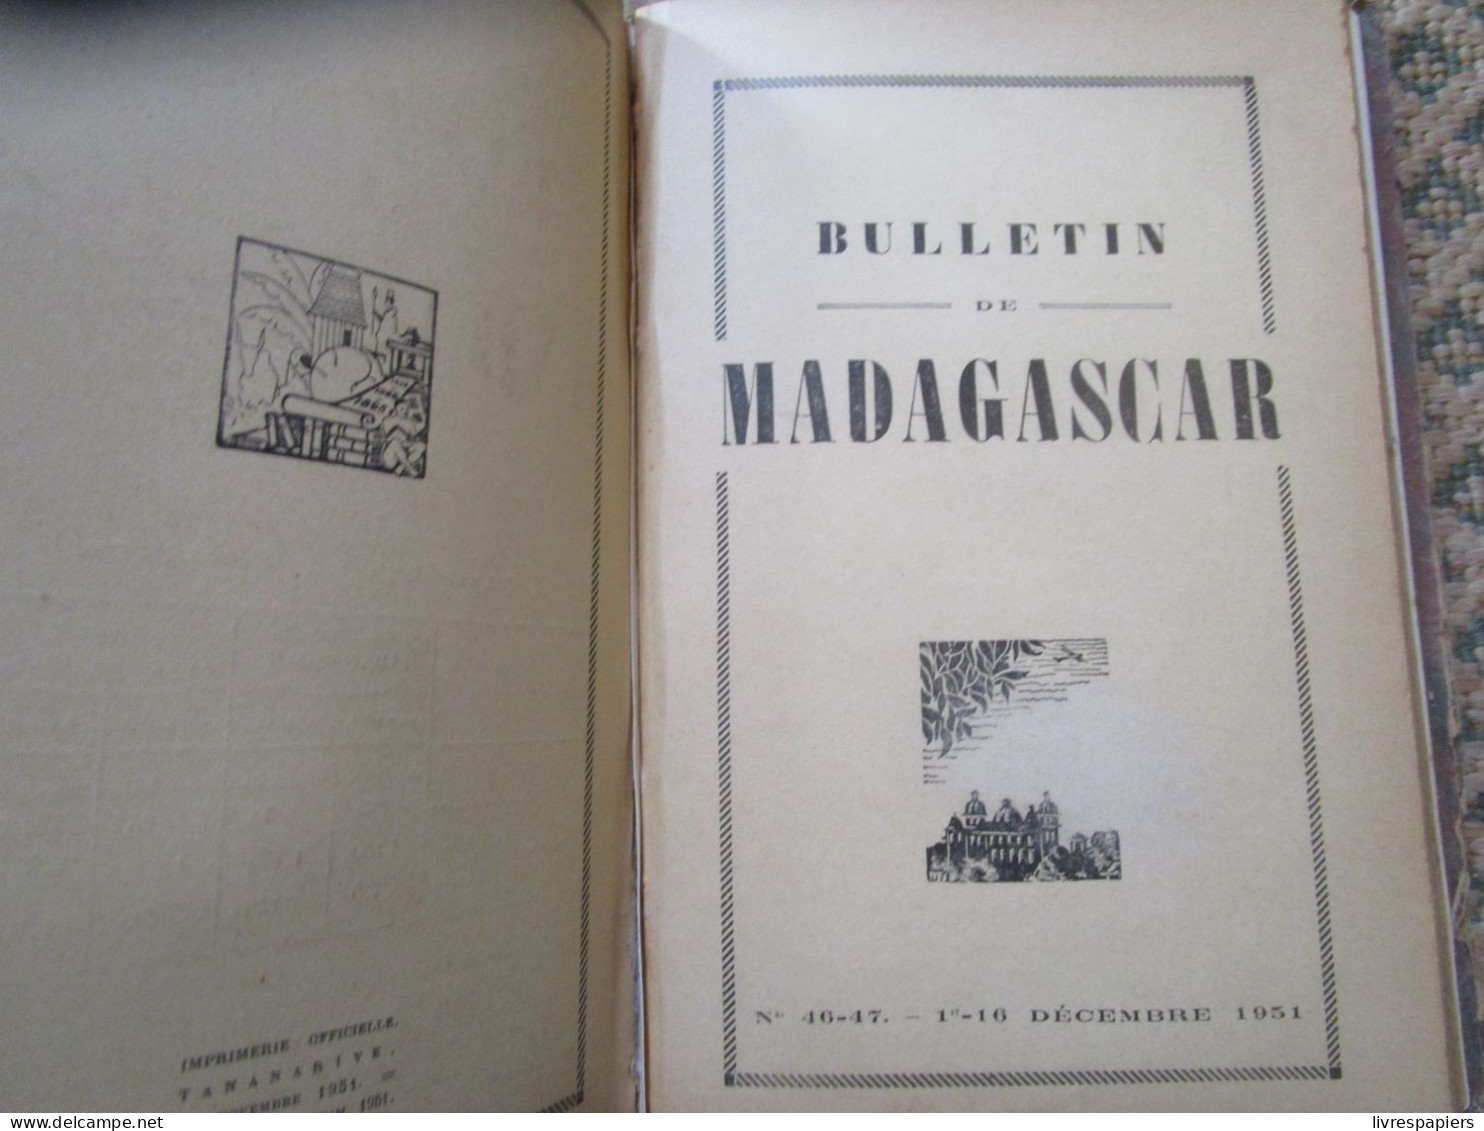 Madagascar BULLETIN DE MADAGASCAR 1951 Complet Janv à Dec , Relier Couvertures Conservées - Geschiedenis